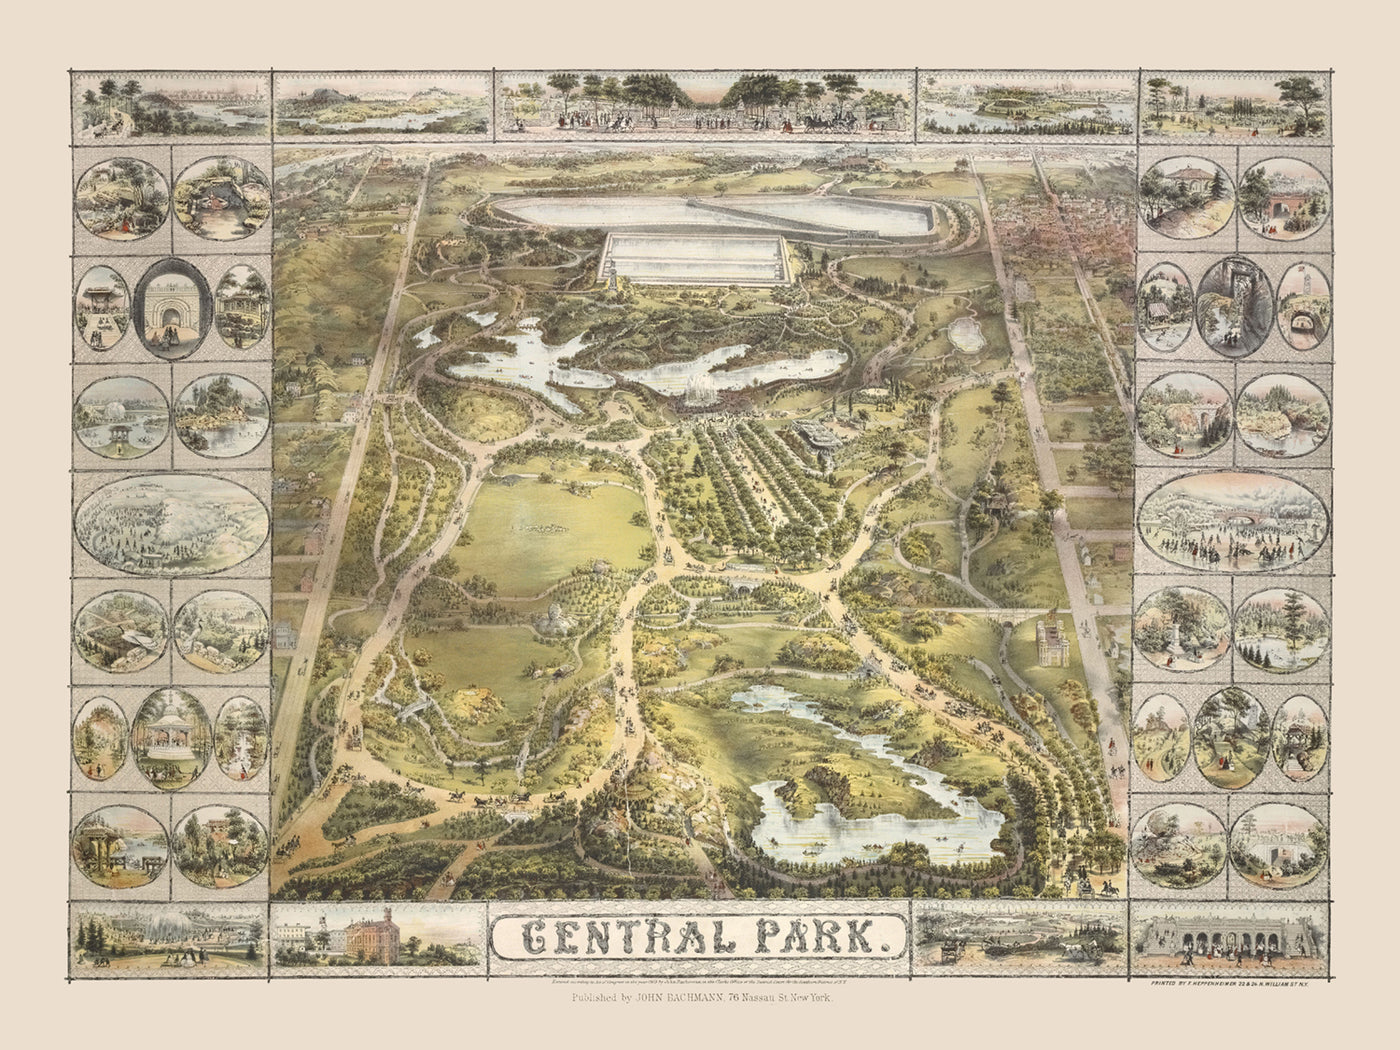 Mapa antiguo de Central Park, Nueva York por Bachmann, 1863: Fuente Bethesda, Sheep Meadow, The Ramble, Cherry Hill